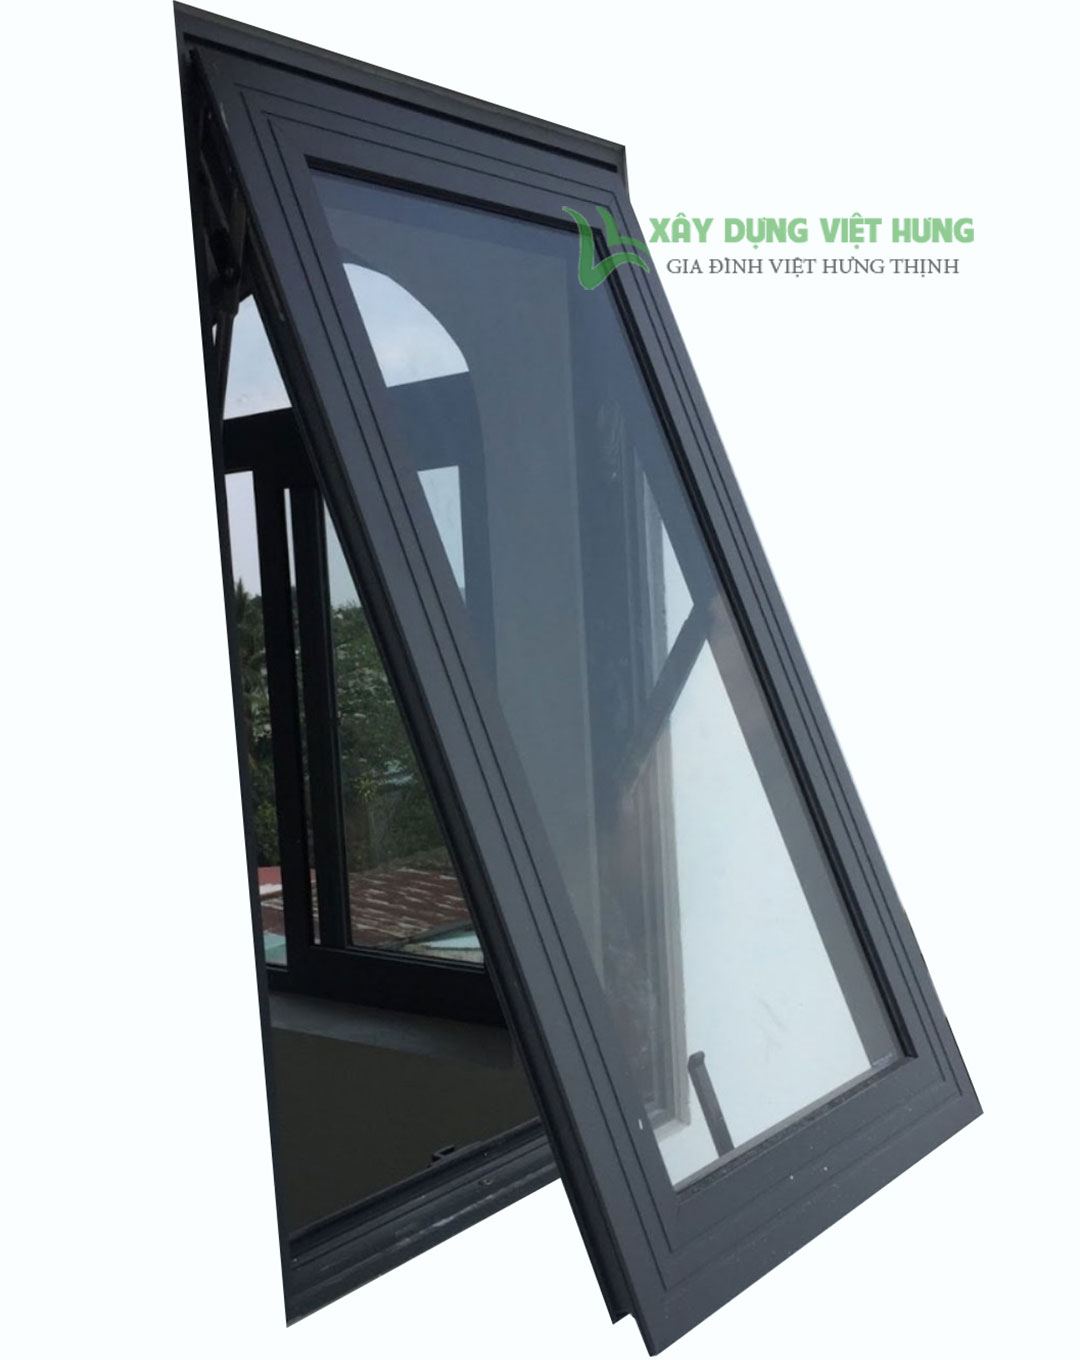 Cửa sổ nhôm là một giải pháp tối ưu cho việc lắp đặt cửa sổ tại nhà. Với thiết kế hiện đại và độ bền cao, cửa sổ nhôm sẽ mang lại sự tiện nghi và ấm cúng cho không gian sống của bạn.